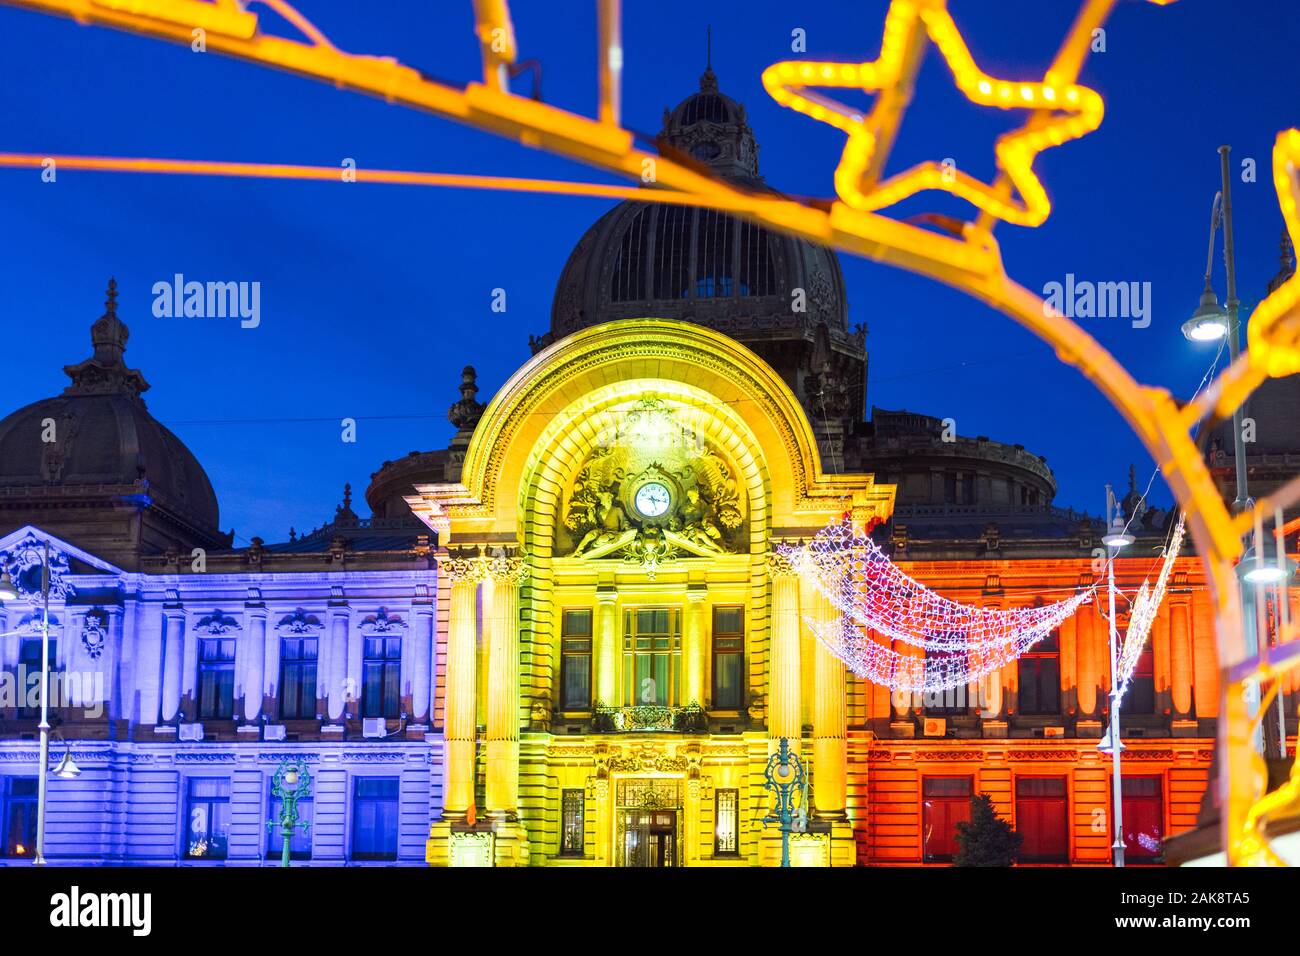 Bucarest, Rumania - Dec 14, 2019: Palacio de depósitos y consignaciones, la sede de la CEC Bank, durante la época de Navidad, Bucarest, Rumania, Europ Foto de stock